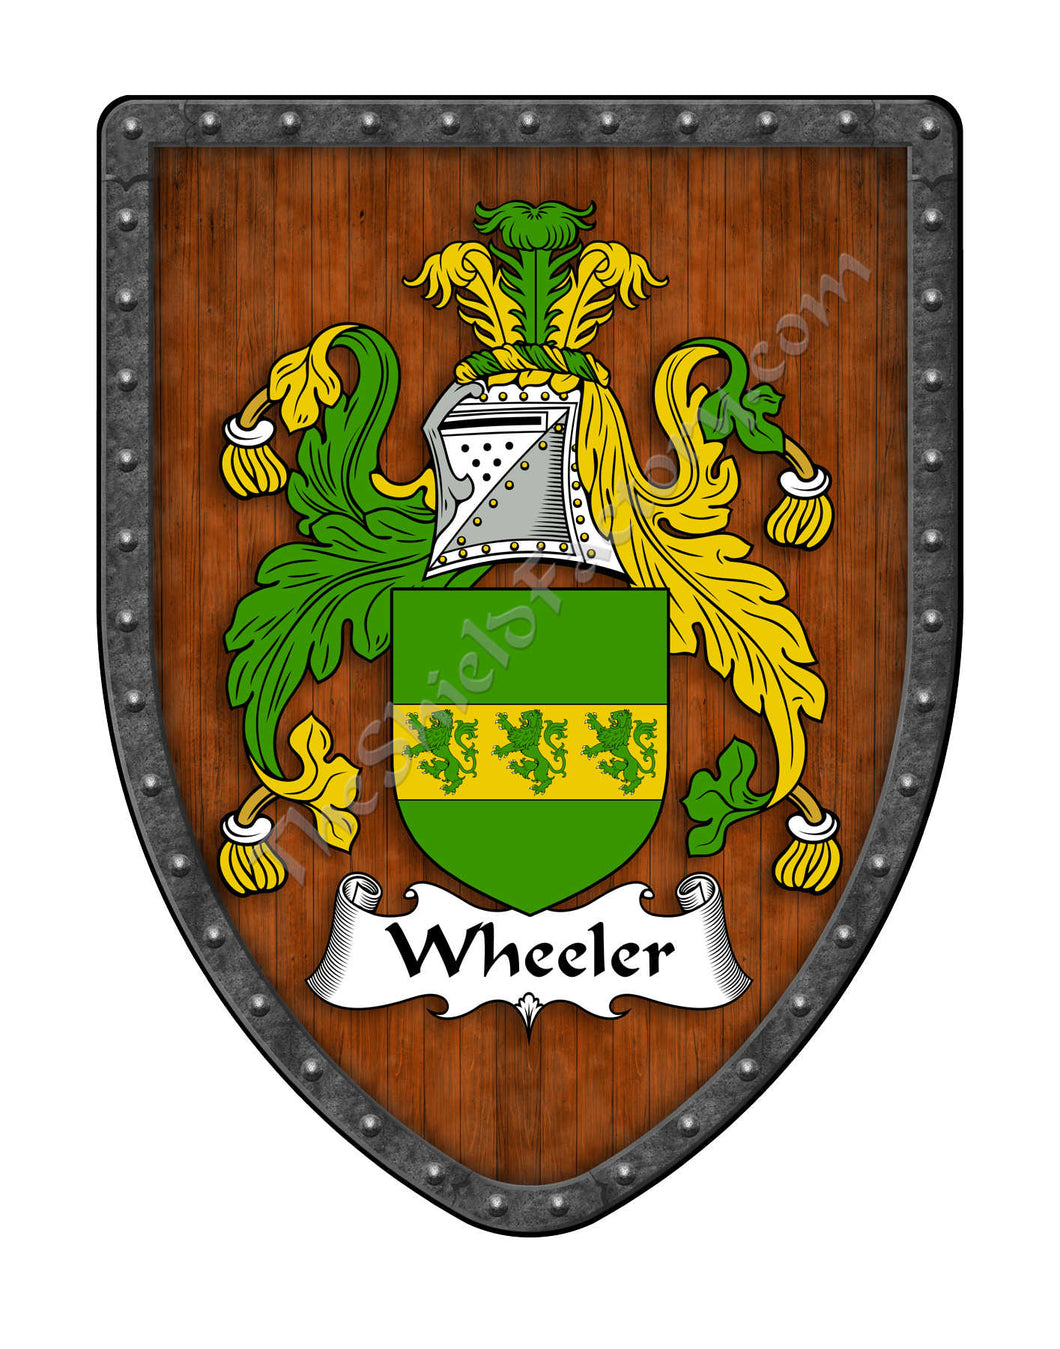 Wheeler